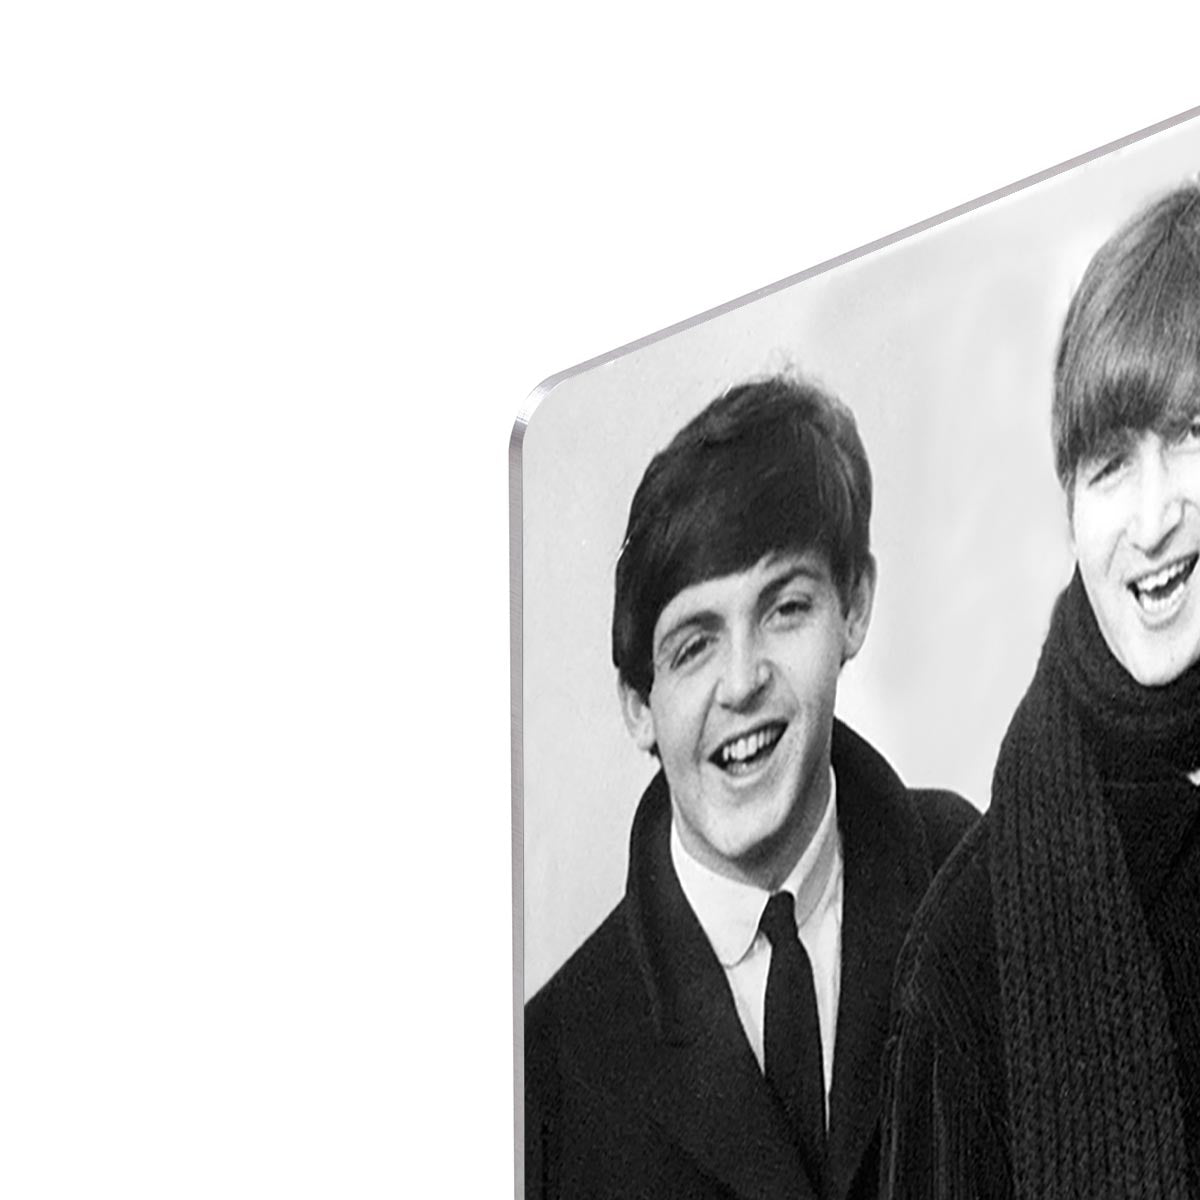 The Beatles in overcoats in 1963 HD Metal Print